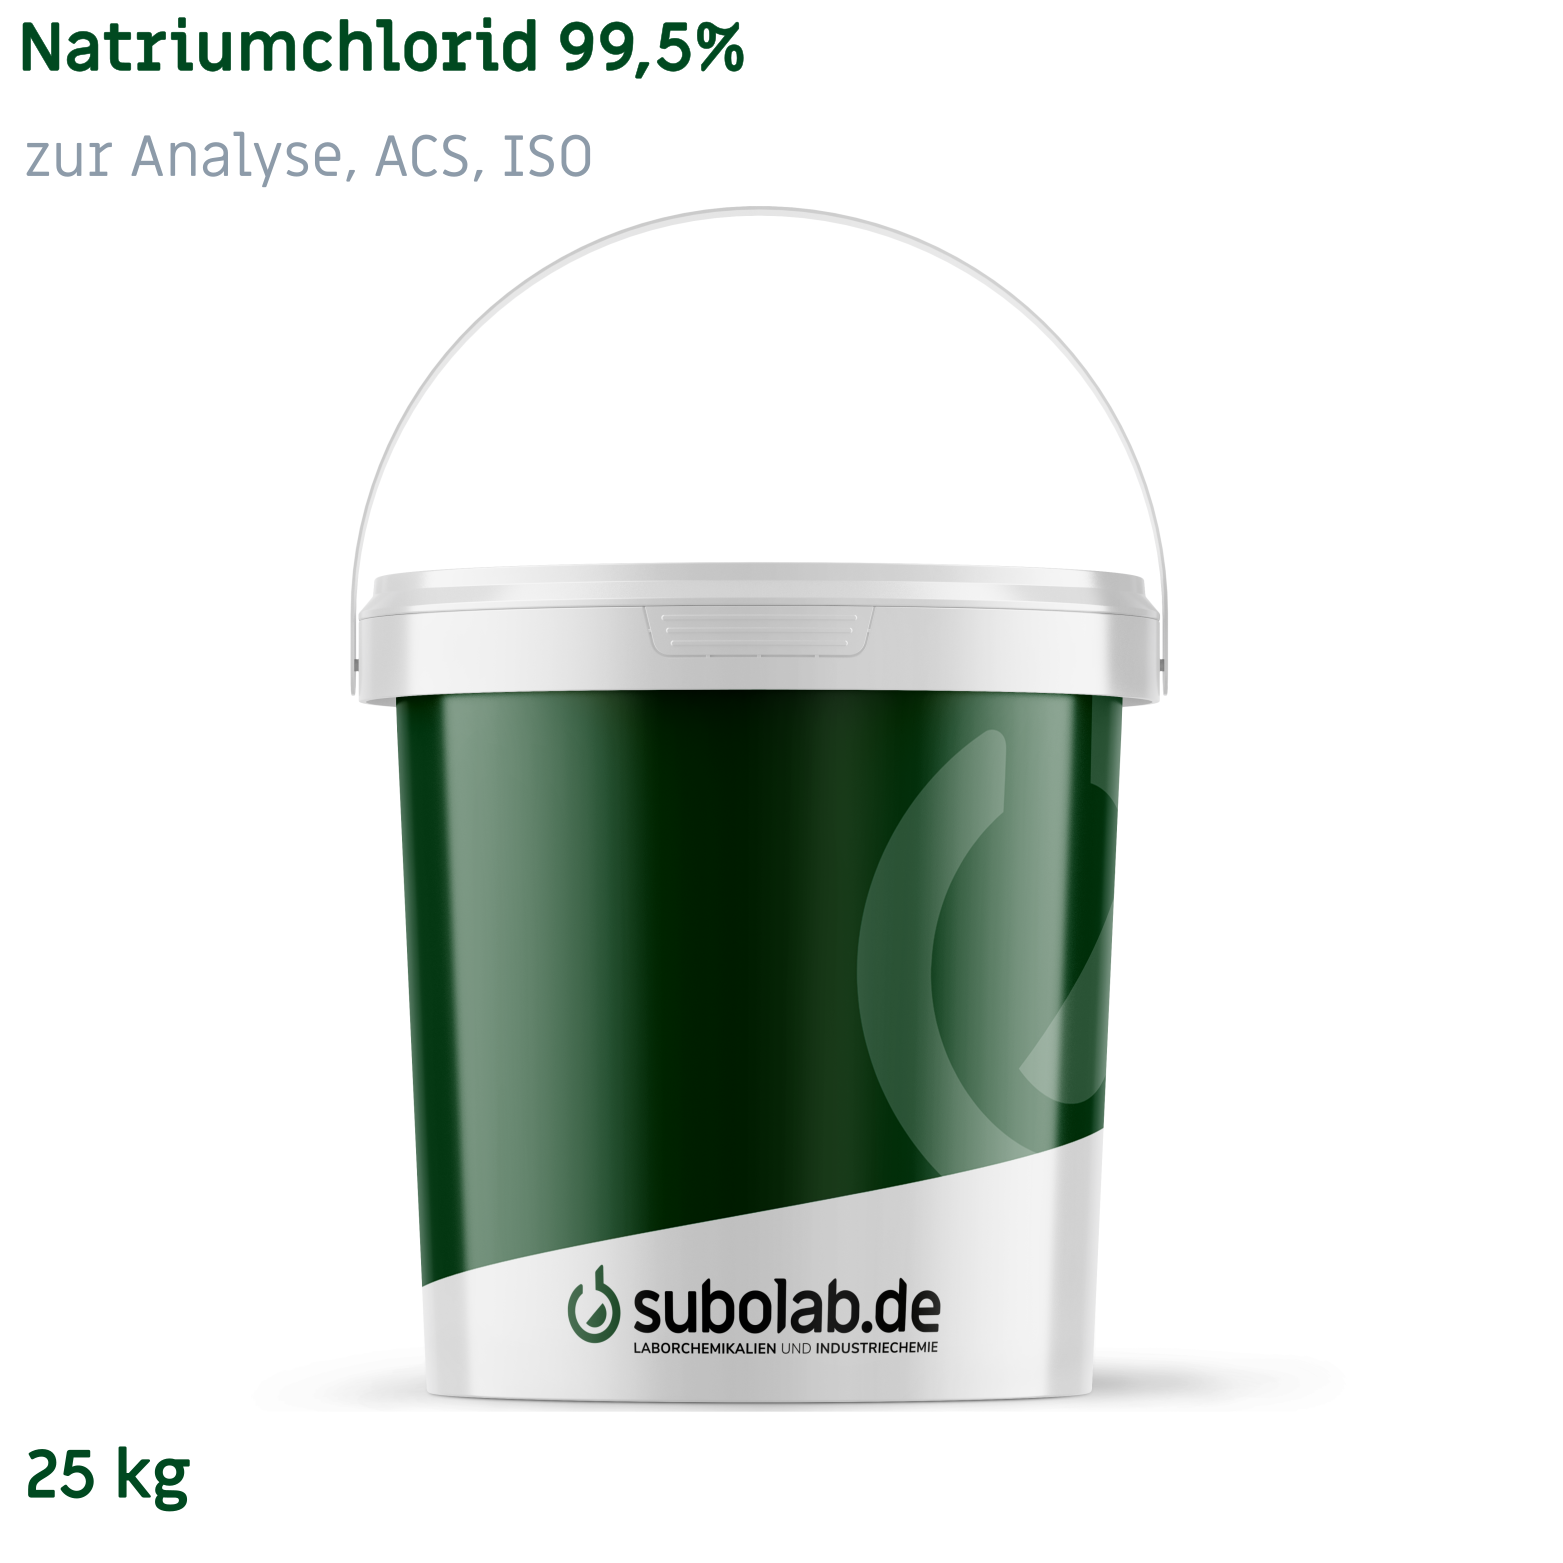 Bild von Natriumchlorid 99,5% zur Analyse, ACS, ISO (25 kg)